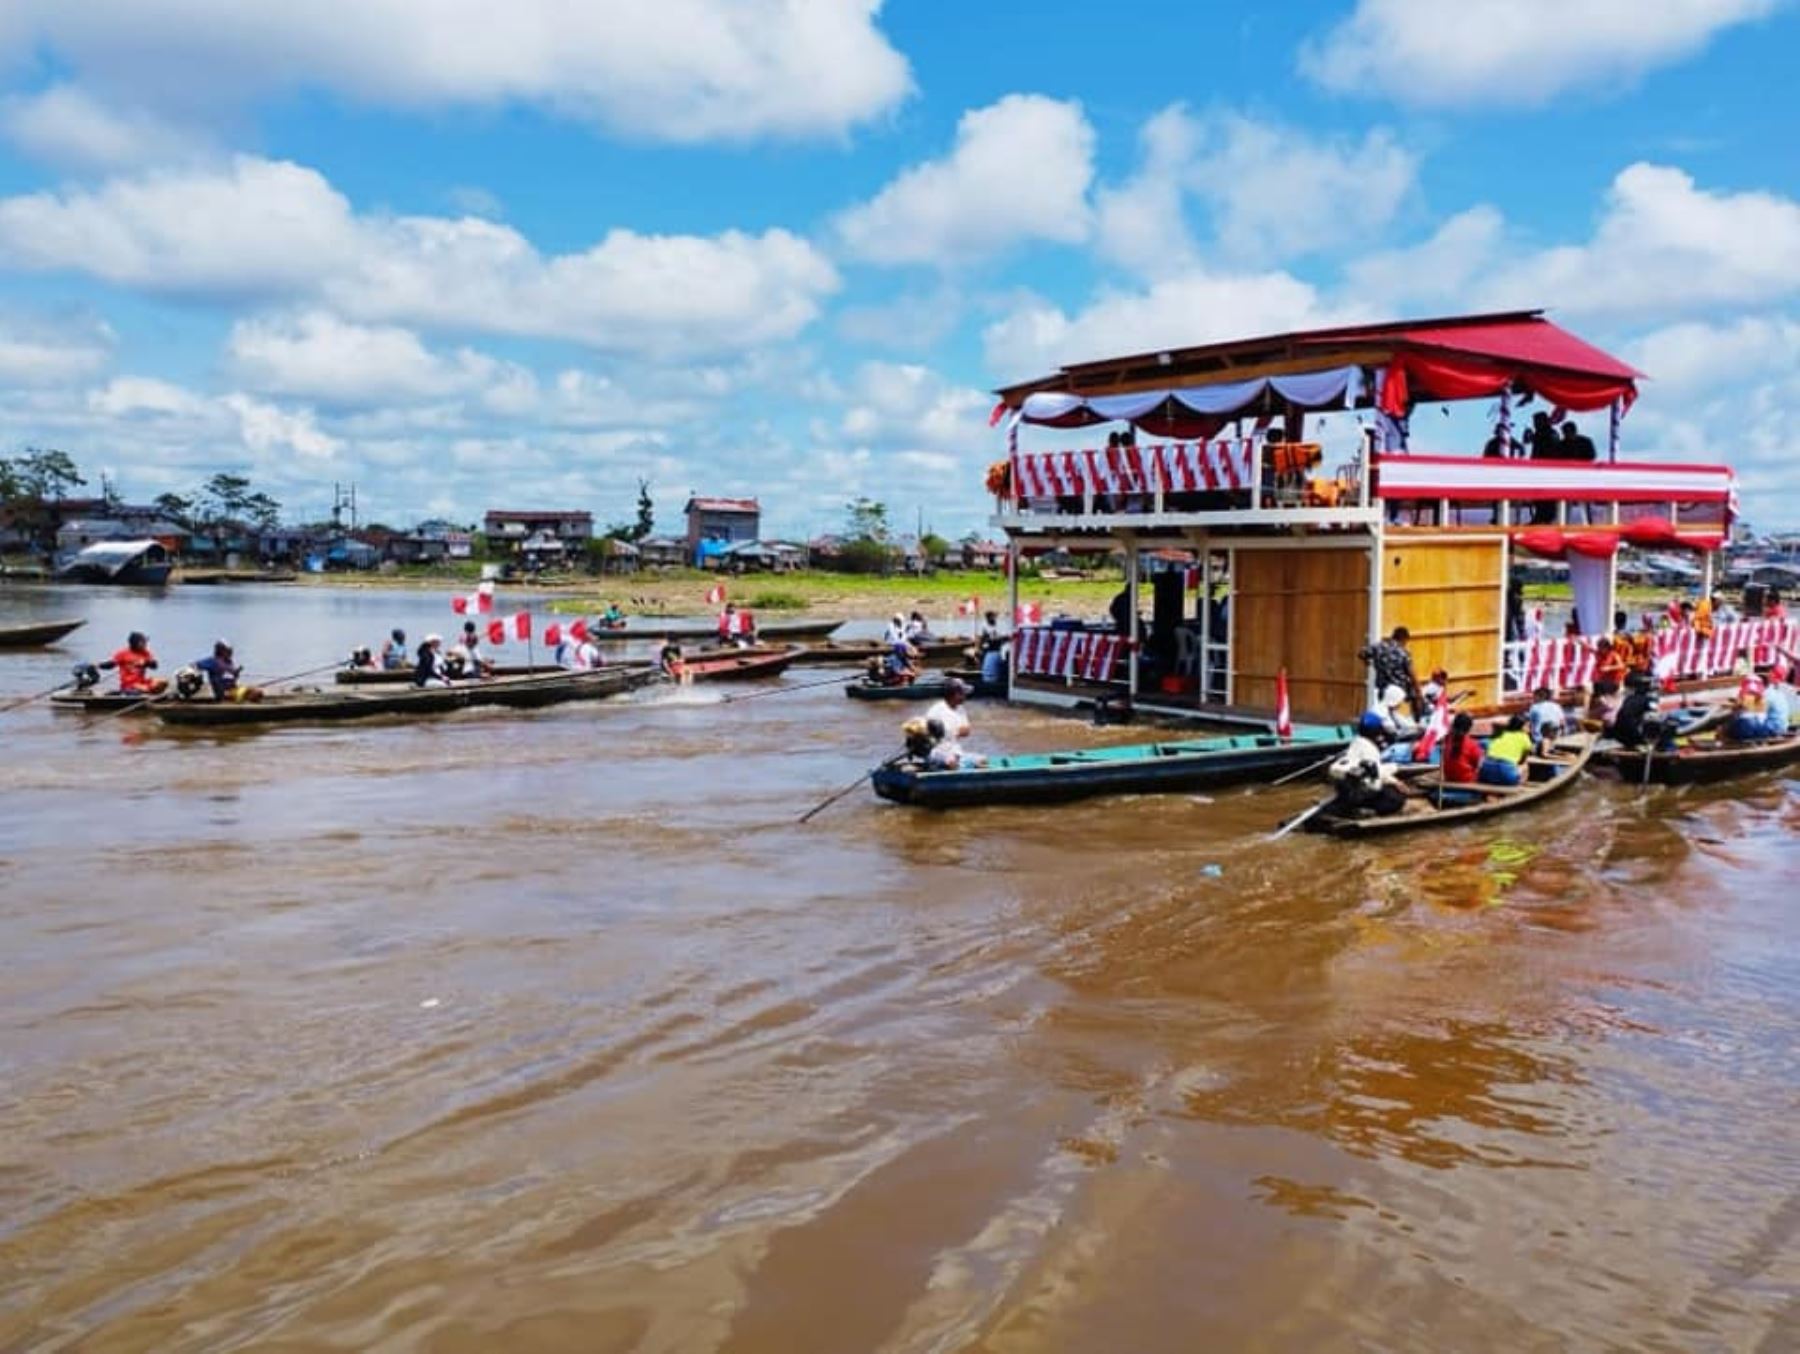 Con una caravana acuática la población de la ciudad de Iquitos, región Loreto, celebró ayer el 201 aniversario de la Independencia de Perú. Foto: municipalidad de Belén.